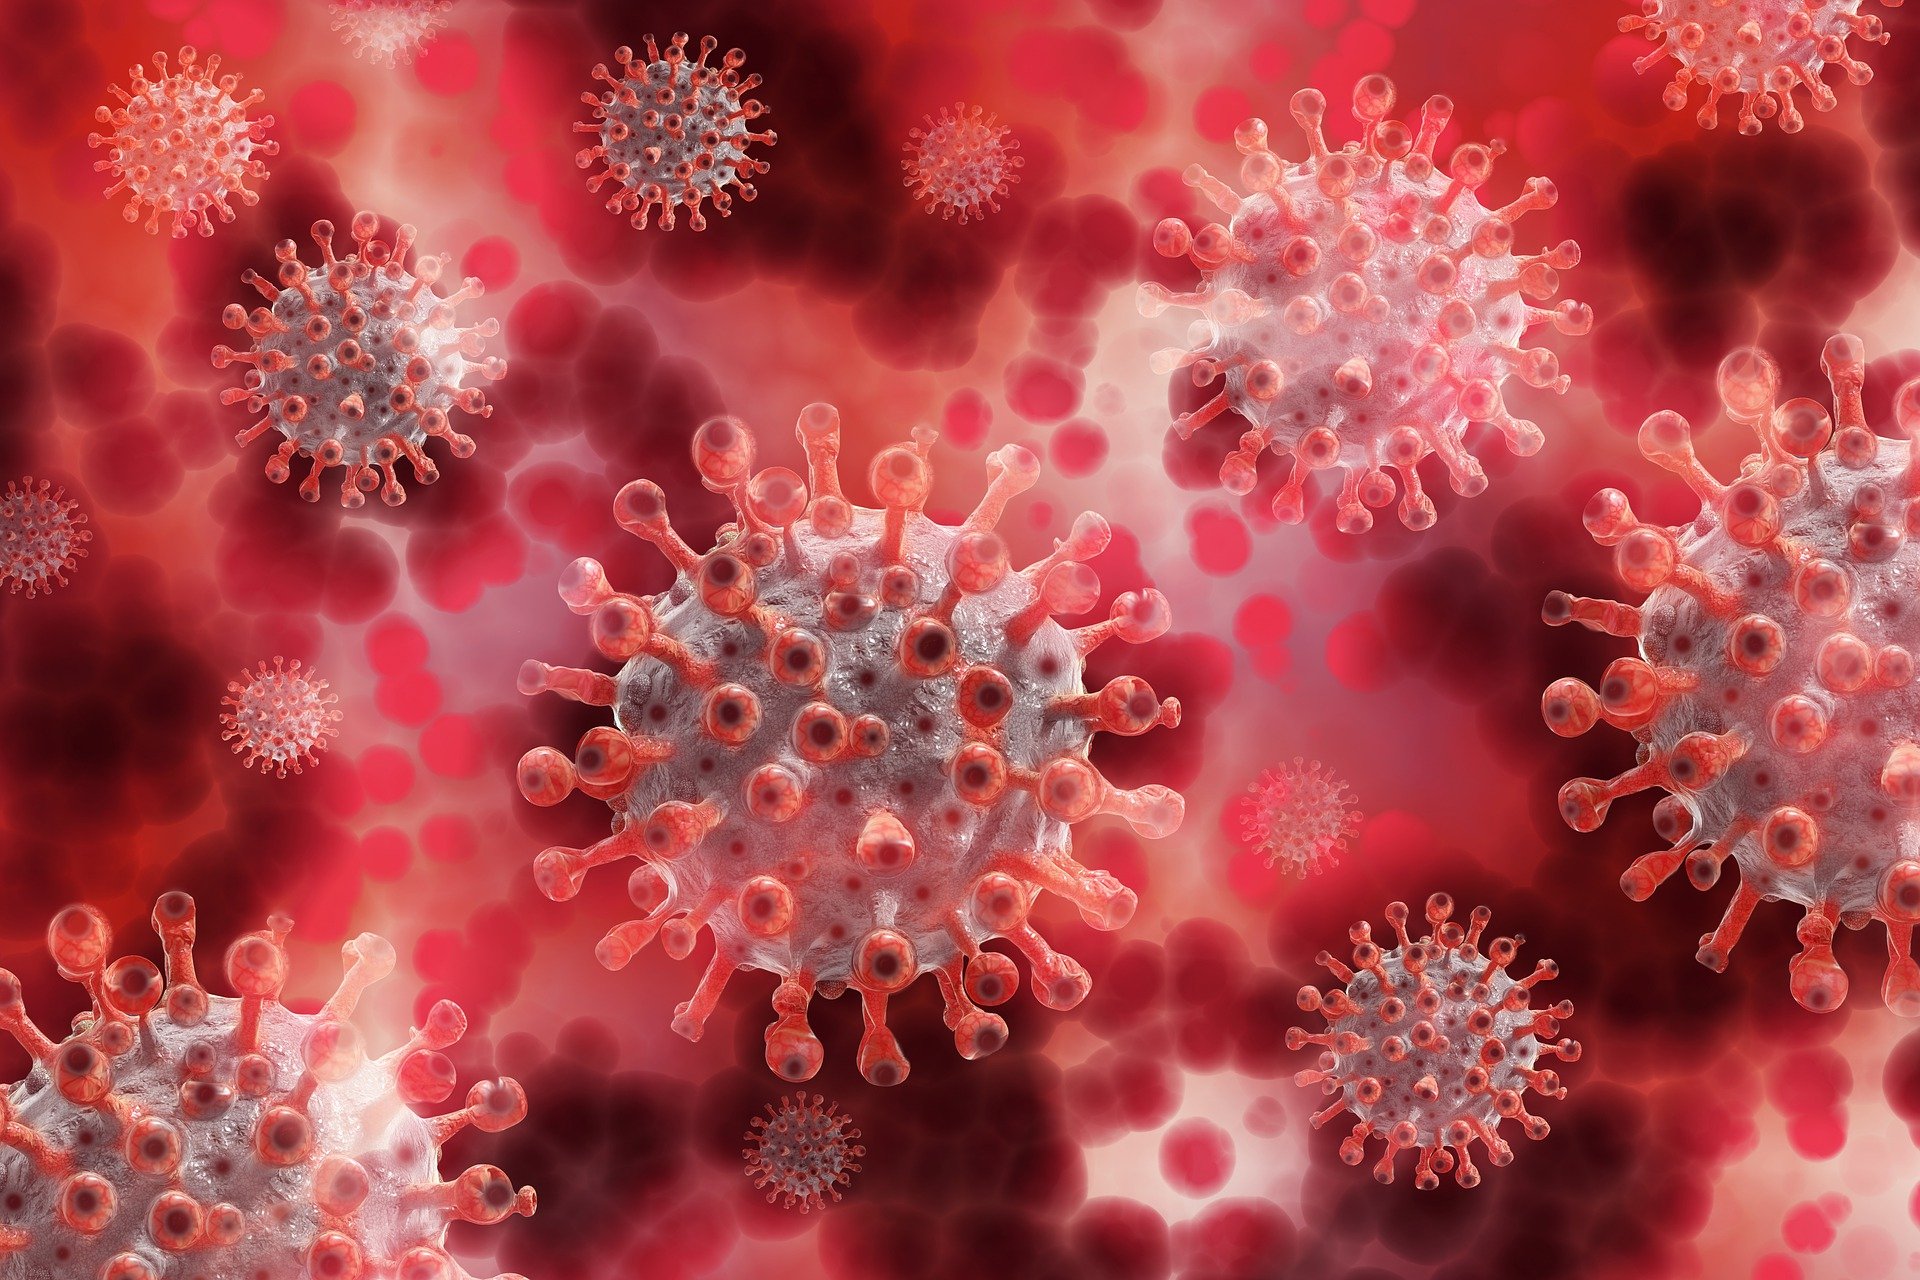 Close up of the coronavirus